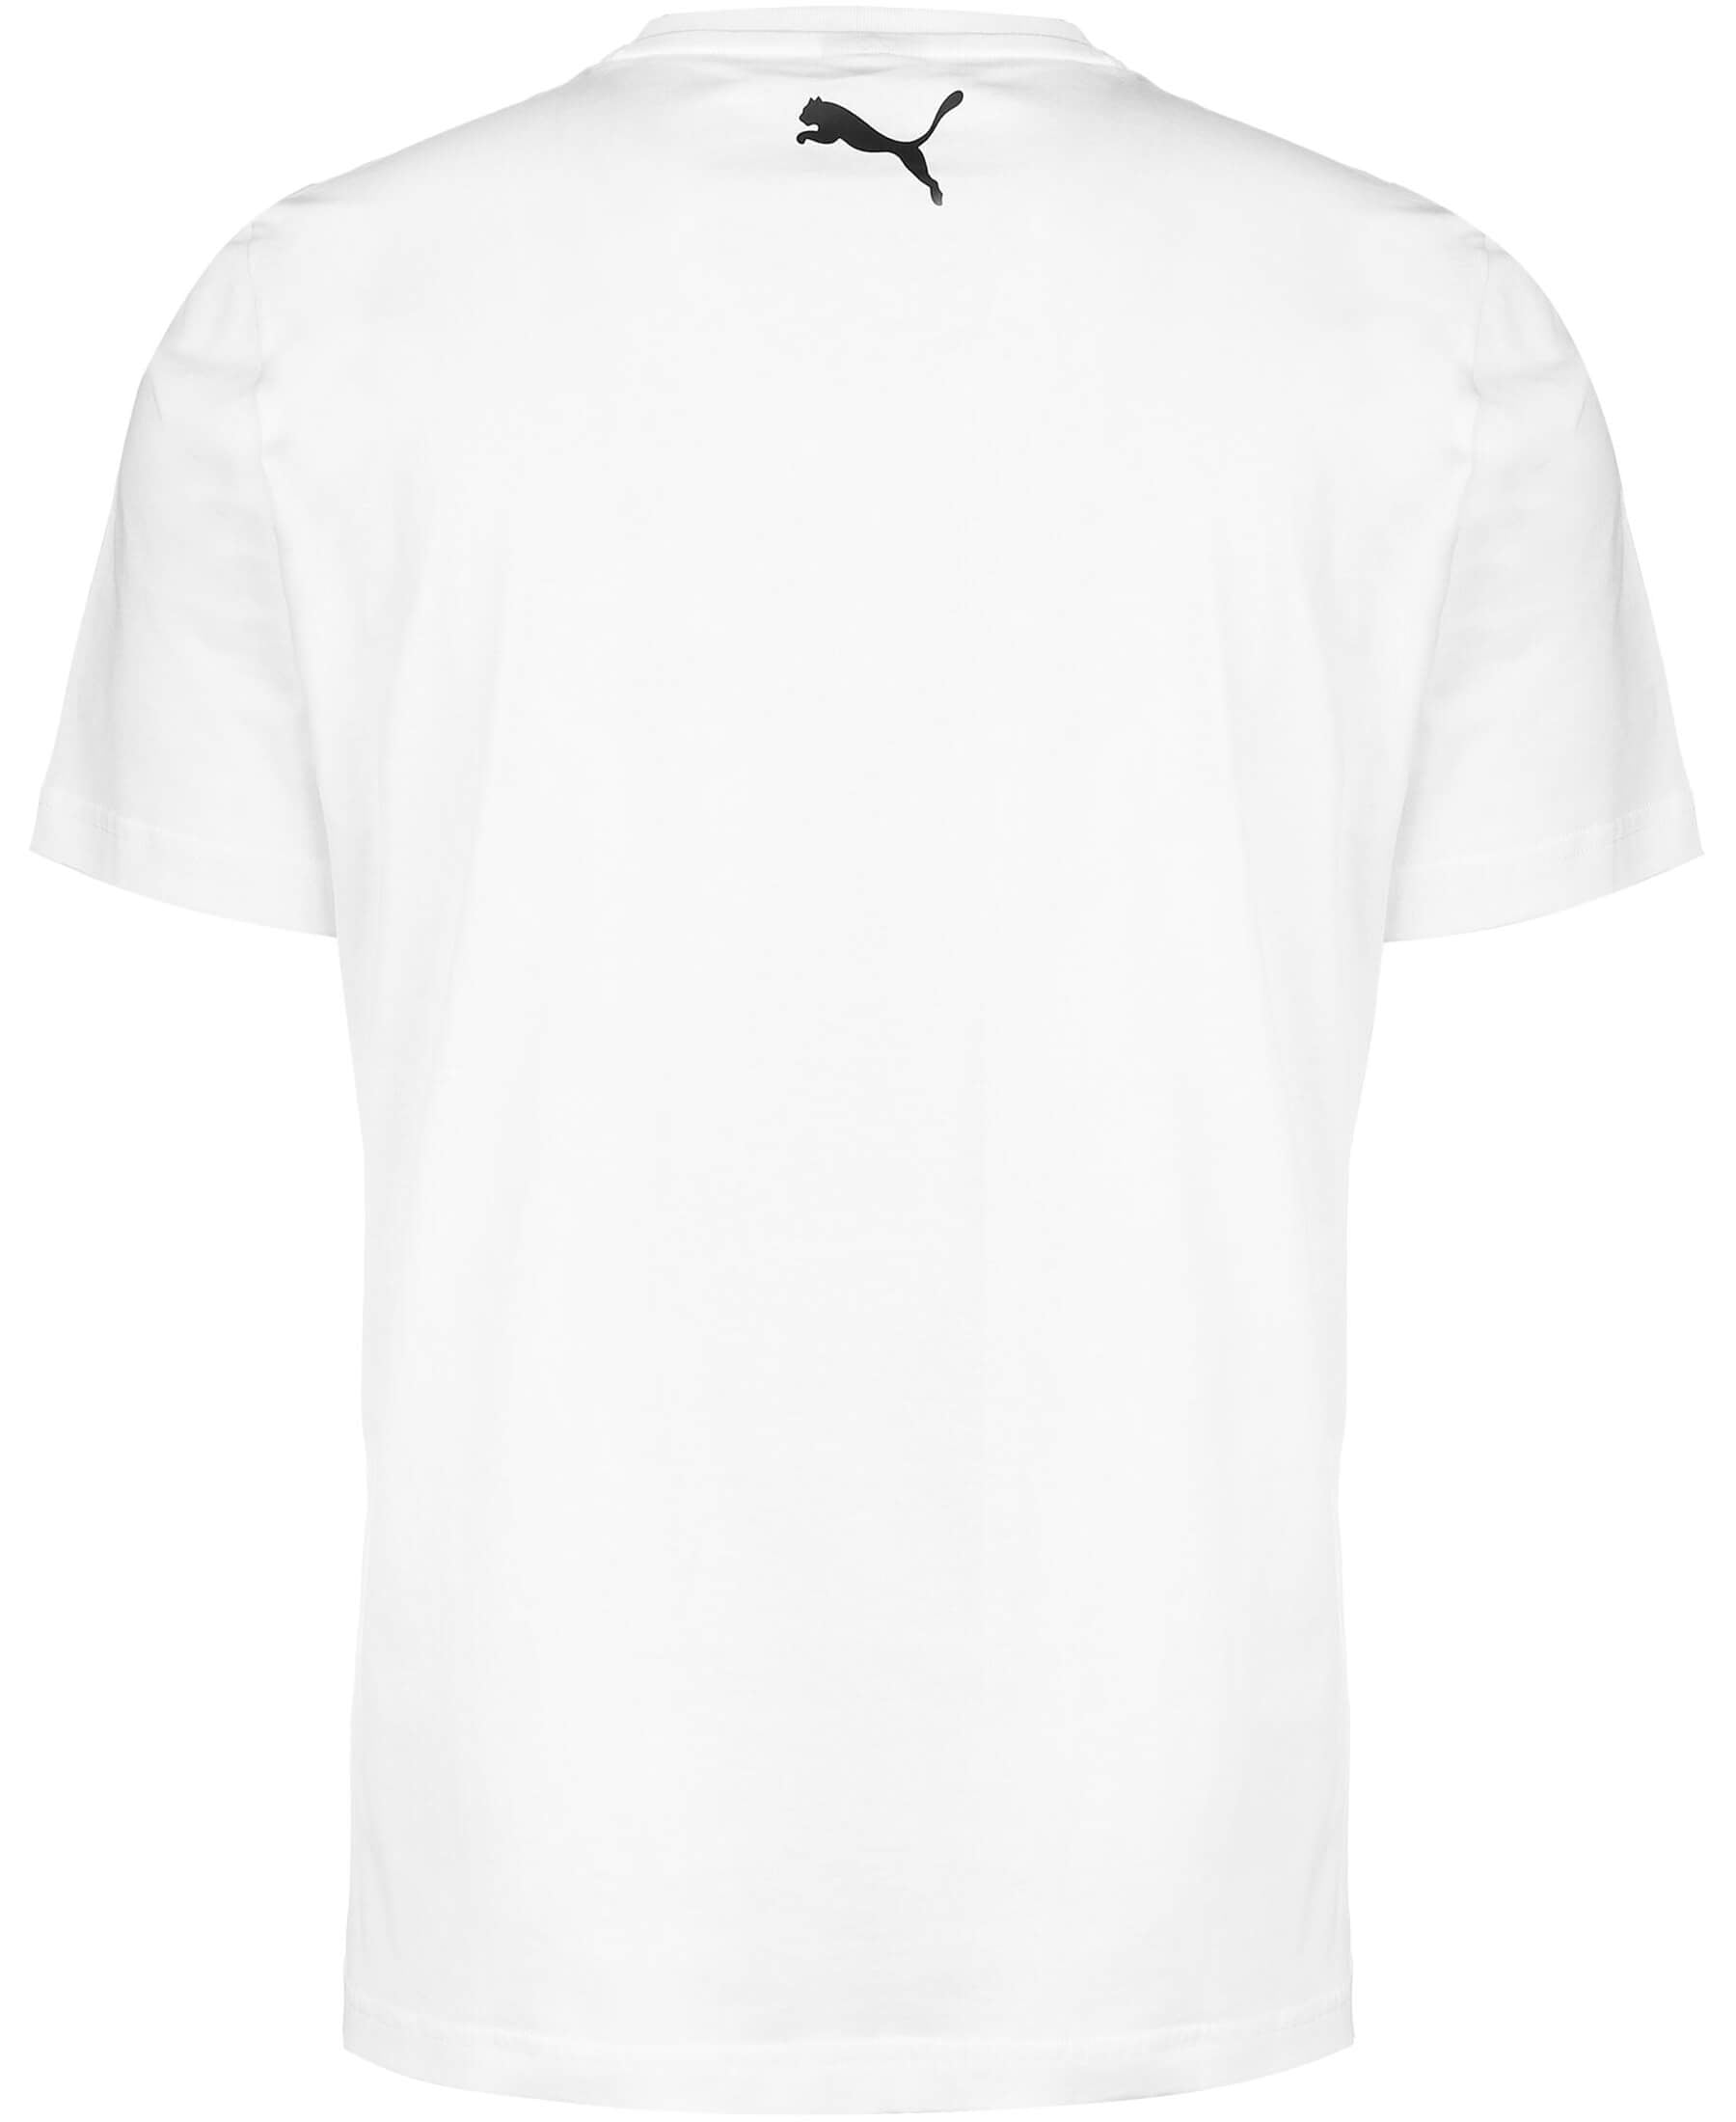 Das Puma Neymar Jr Flare Graphic T-Shirt (605618-05) verkörpert den einzigartigen Stil des Fußballstars. Hol dir dieses trendige Shirt und zeige deine Leidenschaft für Neymar und den Sport. Hochwertige Materialien garantieren Tragekomfort. Erhältlich bei SHOP4TEAMSPORT – dein Shop für Sportbekleidung. Bestelle jetzt und sei Teil des Neymar-Fans.